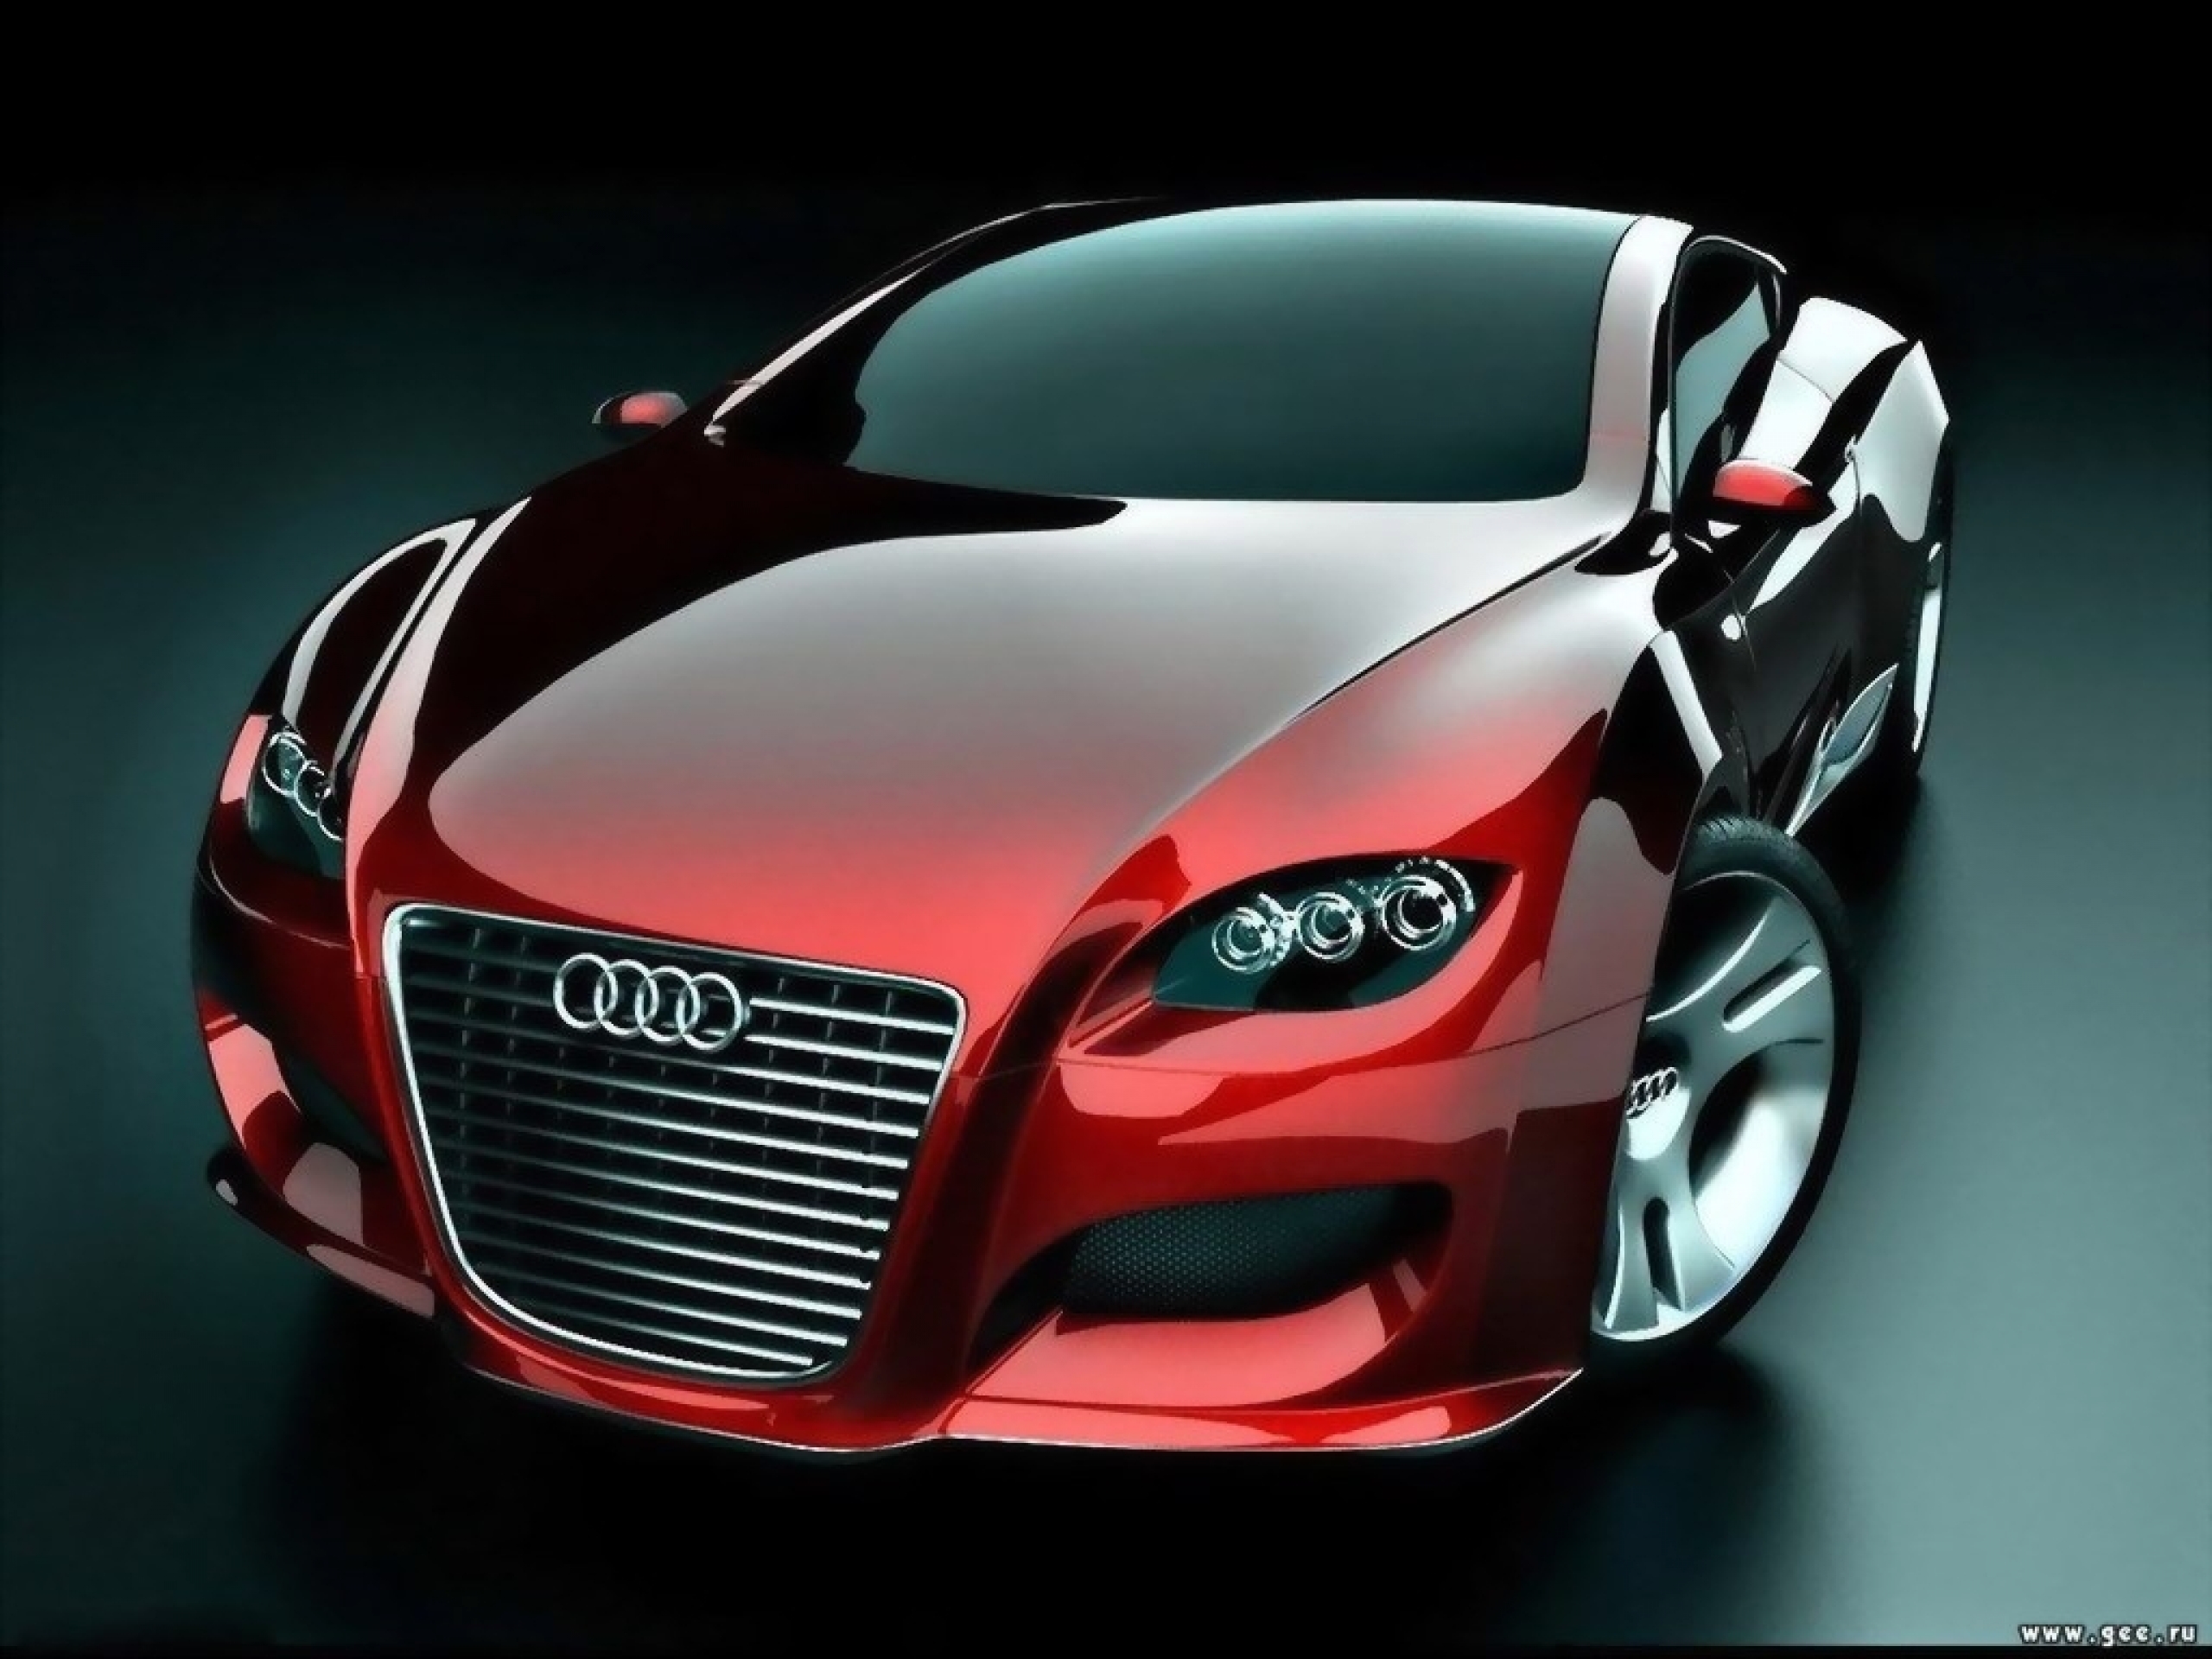 Los mejores fondos de pantalla de Audi Lugar para la pantalla del teléfono